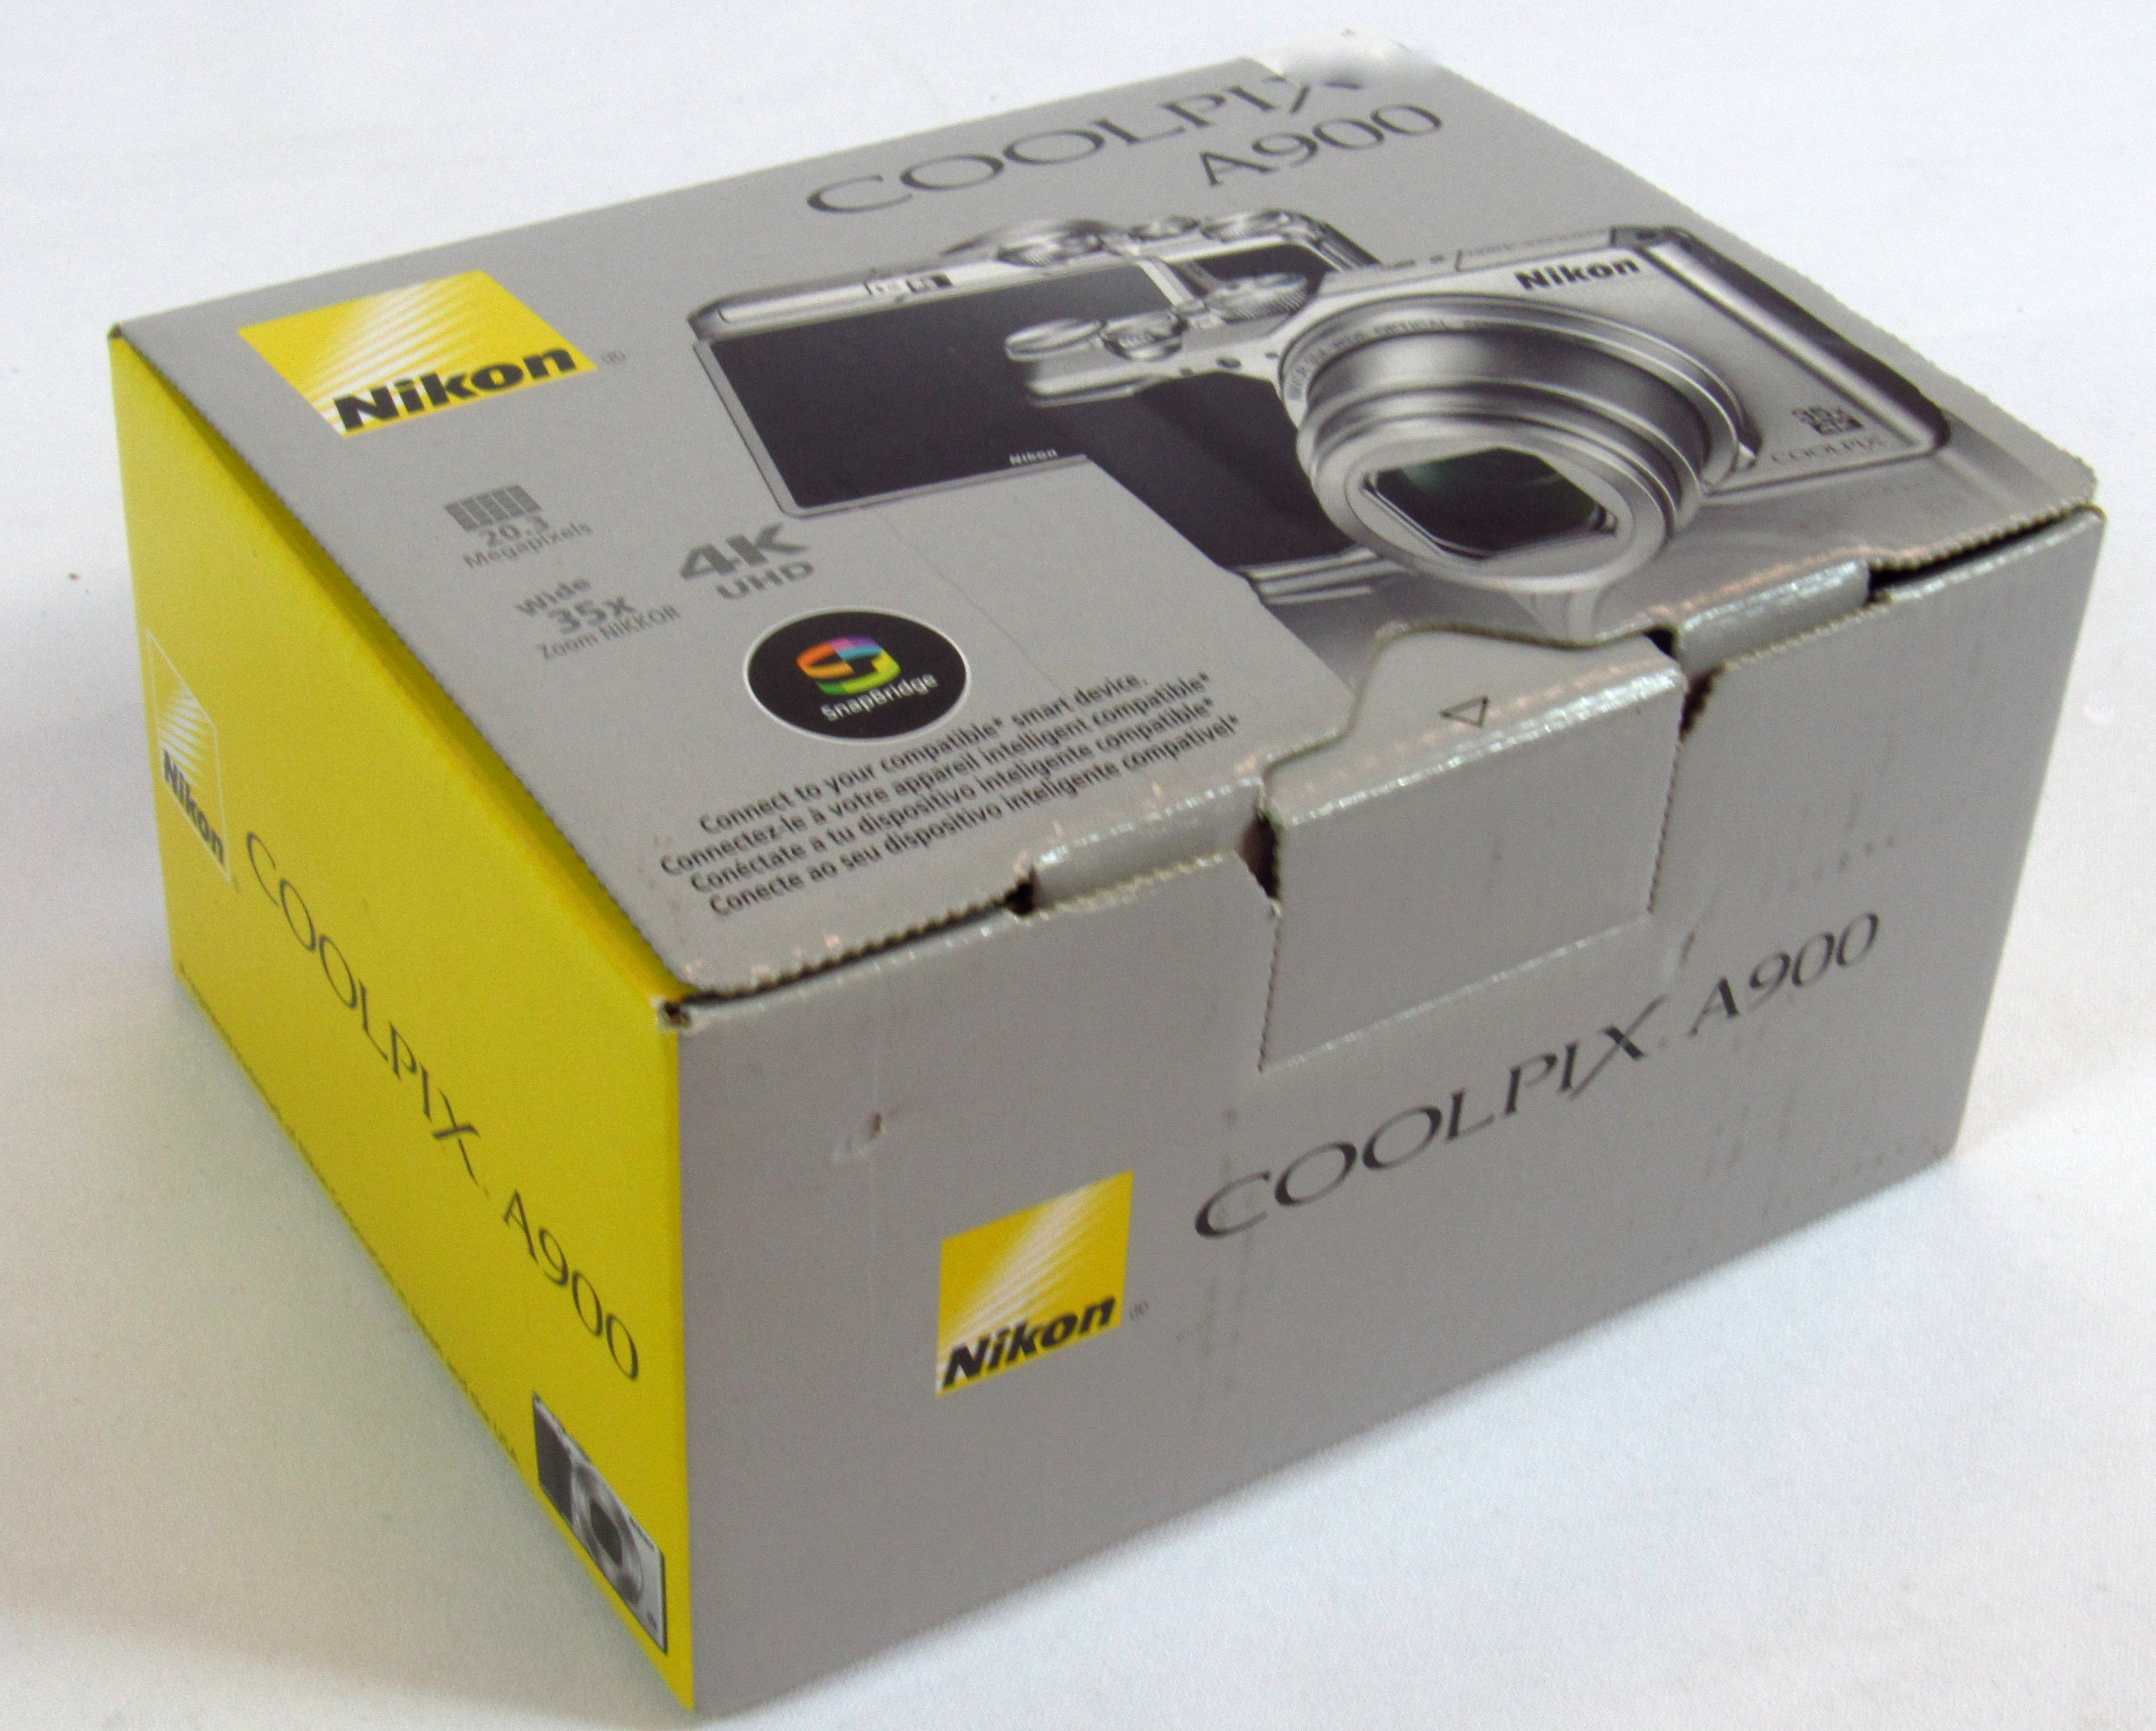 Nikon Coolpix S9700 16 Megapixel Compact Camera, Black - Walmart.com